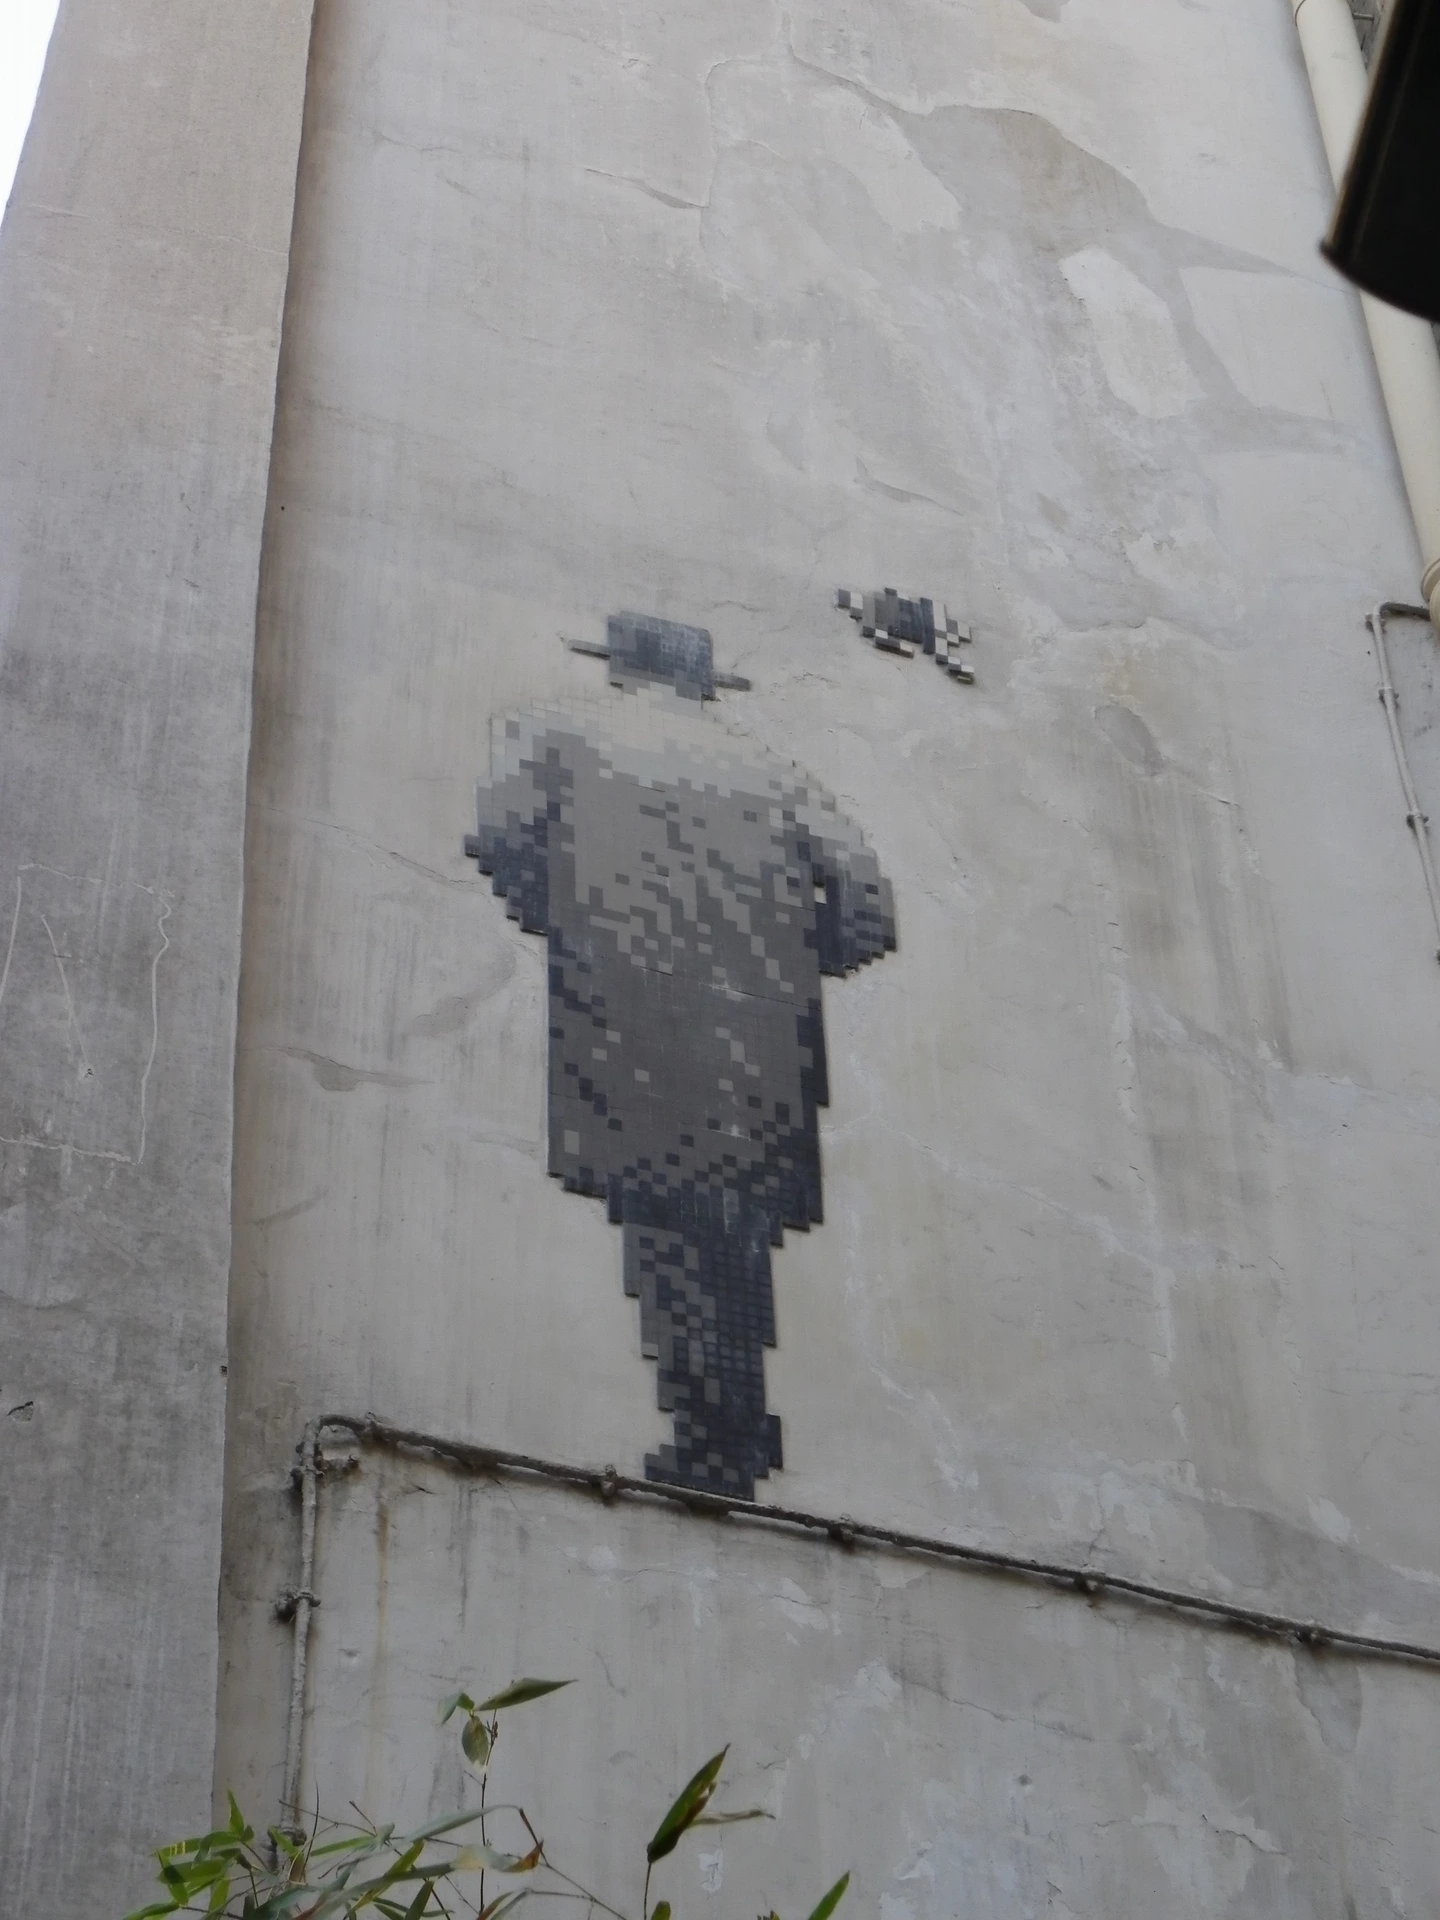 Oeuvre de Street Art réalisée par Invader à Paris